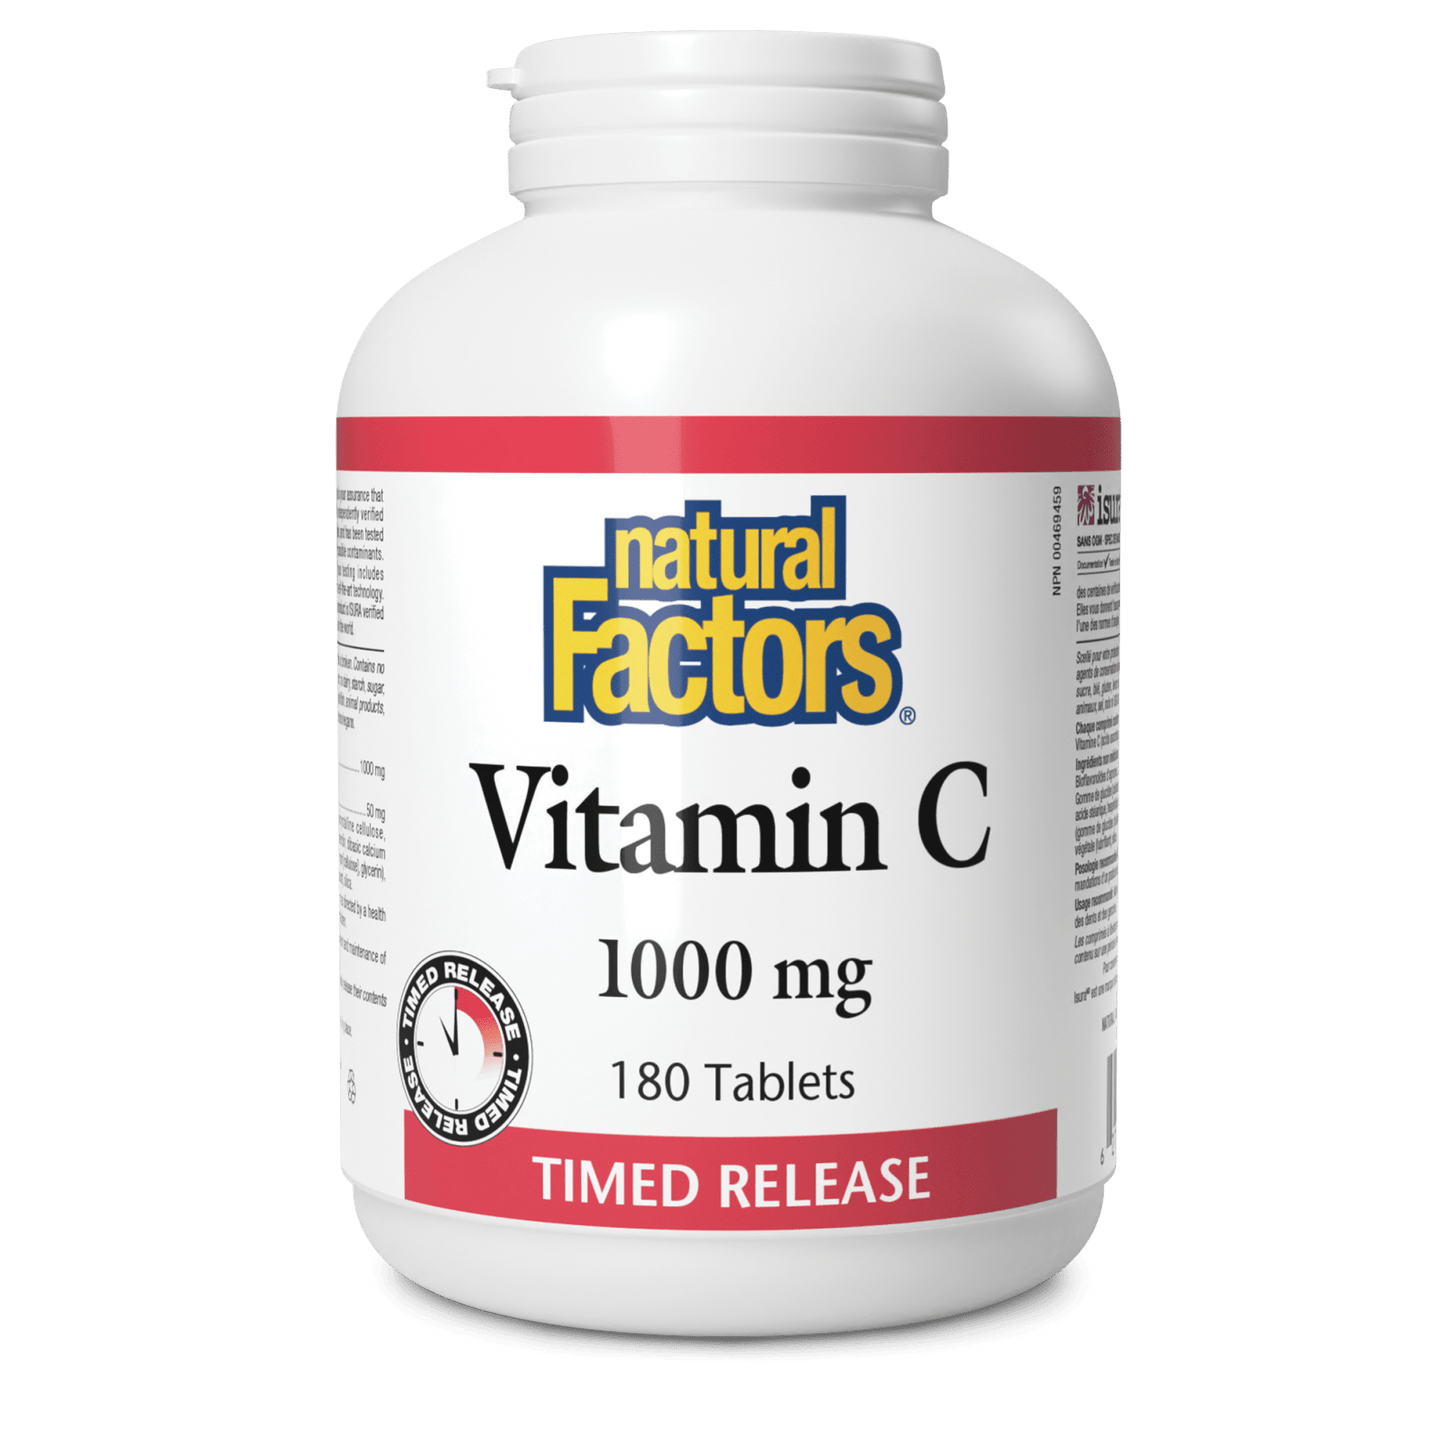 Vitamin C Time Release 1000 mg, Natural Factors|v|image|1342